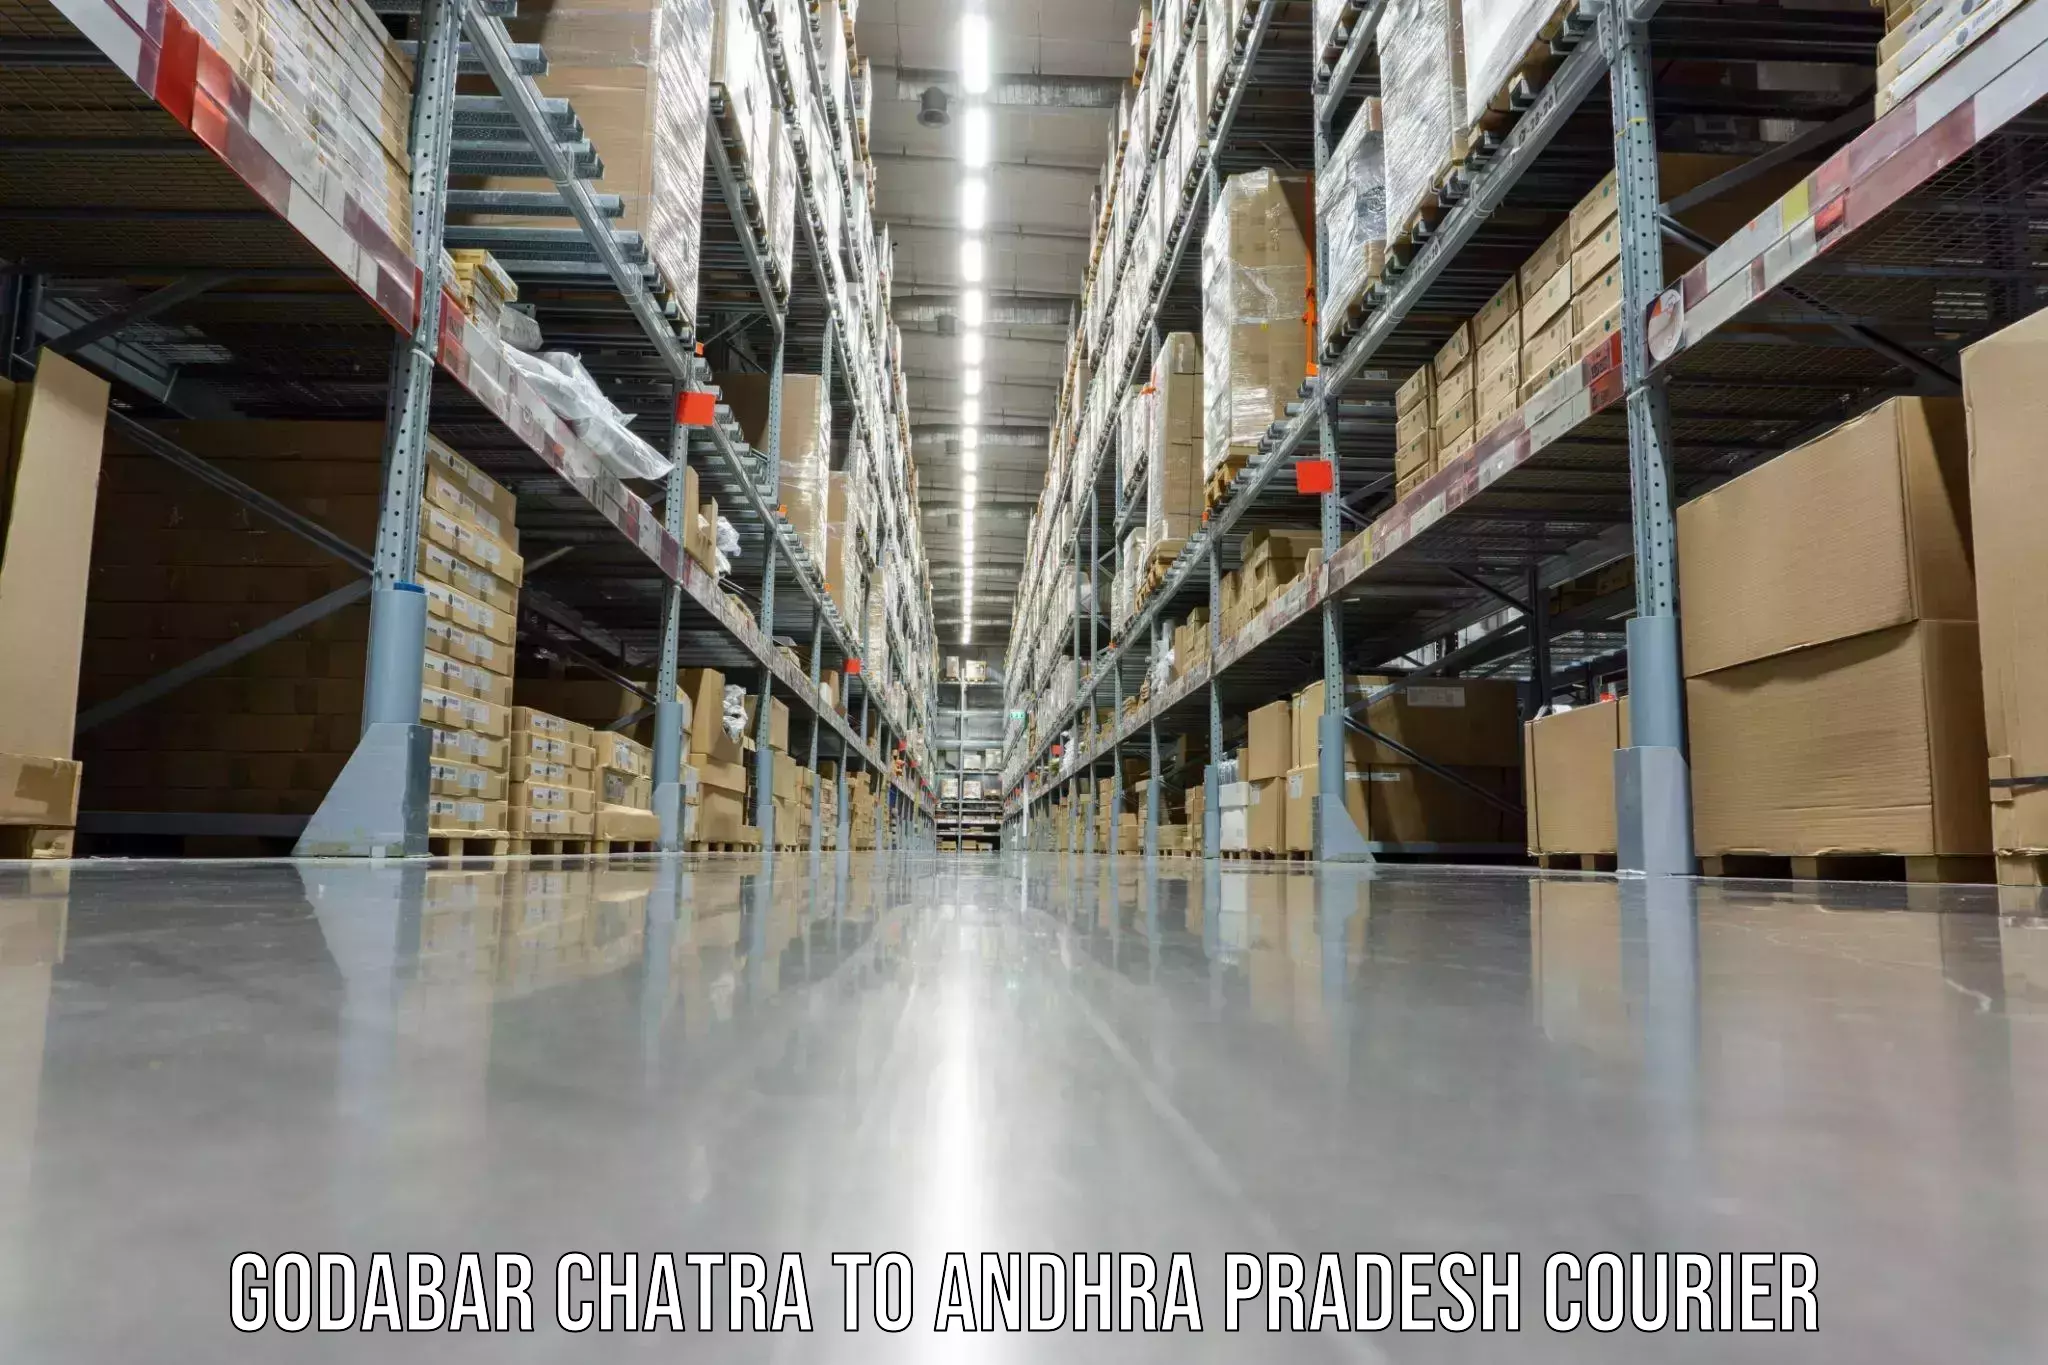 Home goods moving company Godabar Chatra to Gokavaram